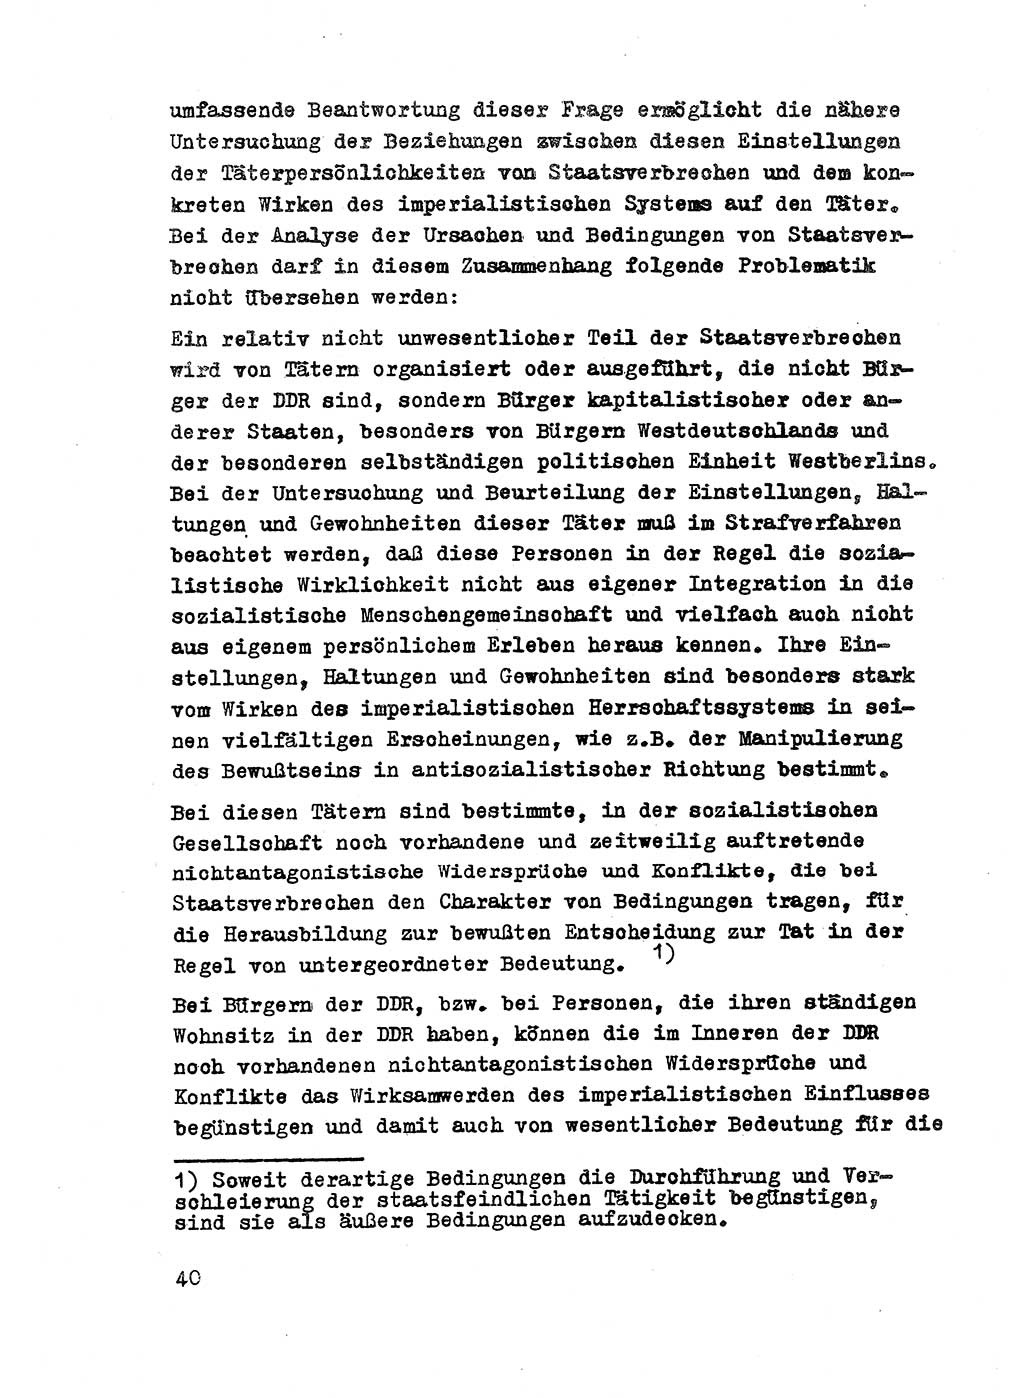 Strafrecht der DDR (Deutsche Demokratische Republik), Besonderer Teil, Lehrmaterial, Heft 2 1969, Seite 40 (Strafr. DDR BT Lehrmat. H. 2 1969, S. 40)